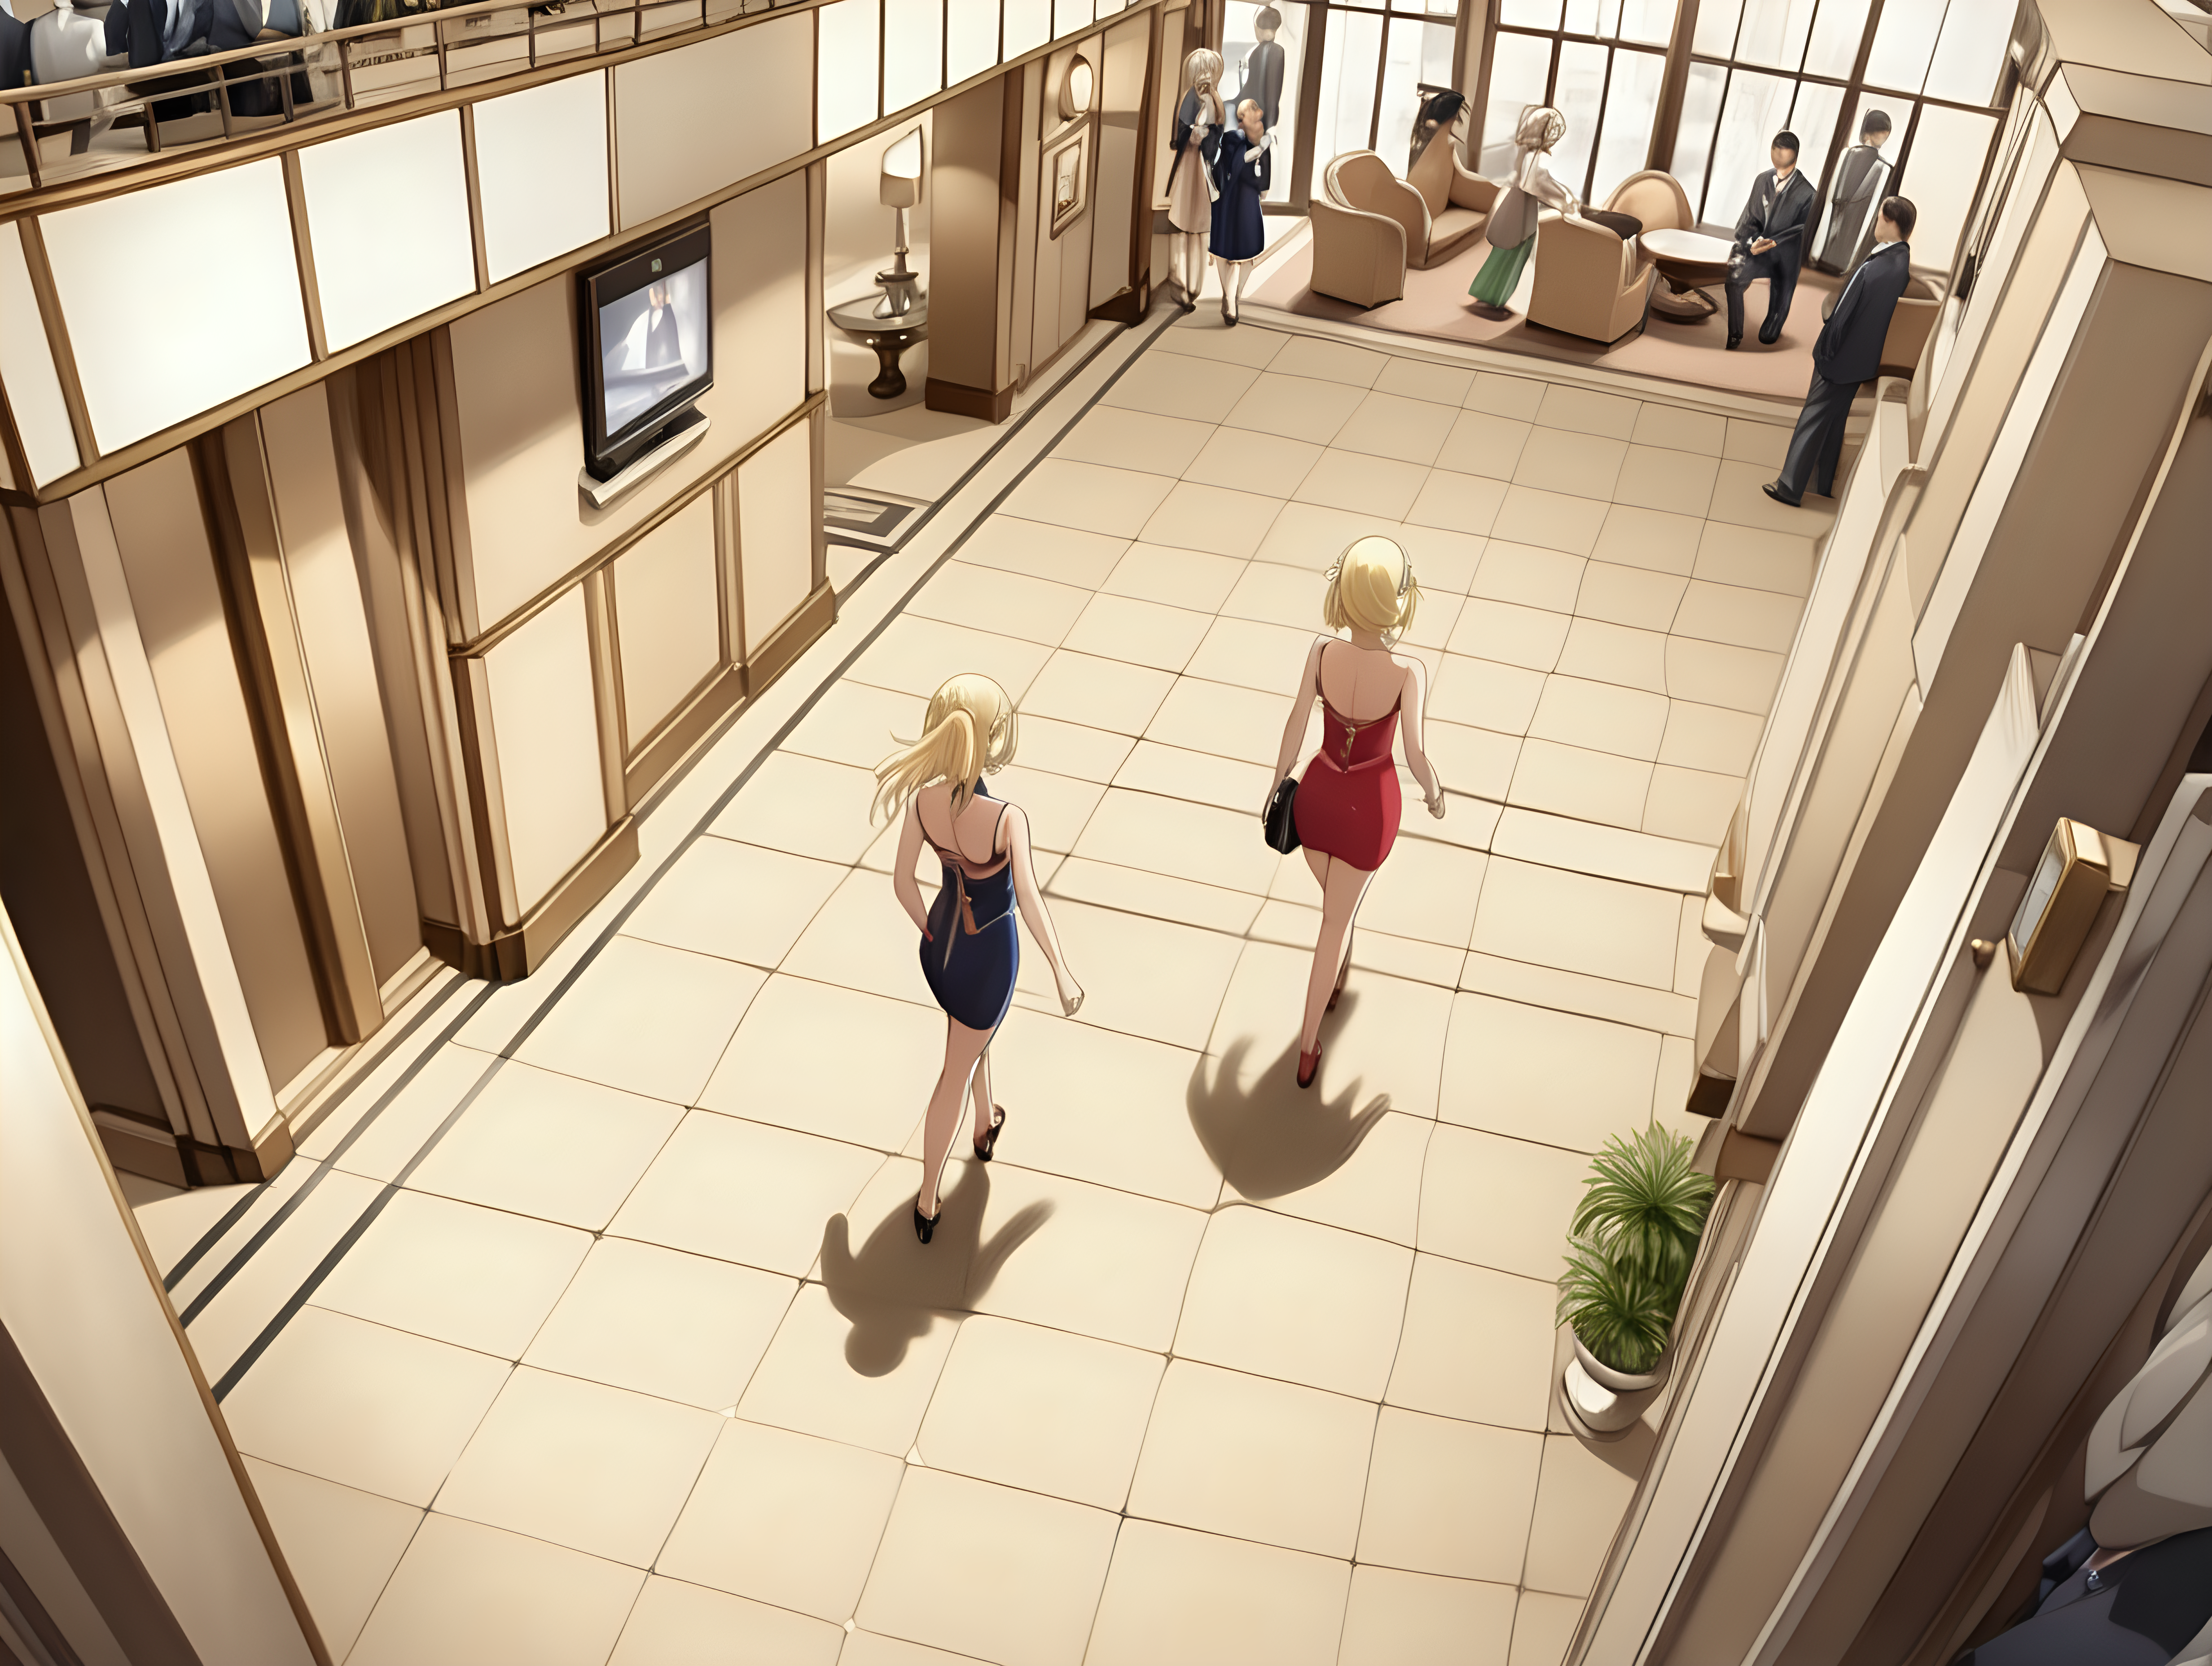 Recepcion de un hotel, mujer rubia sexi elegante andando hacia recepcion.vista desde un metros arriba de su cabeza.anime